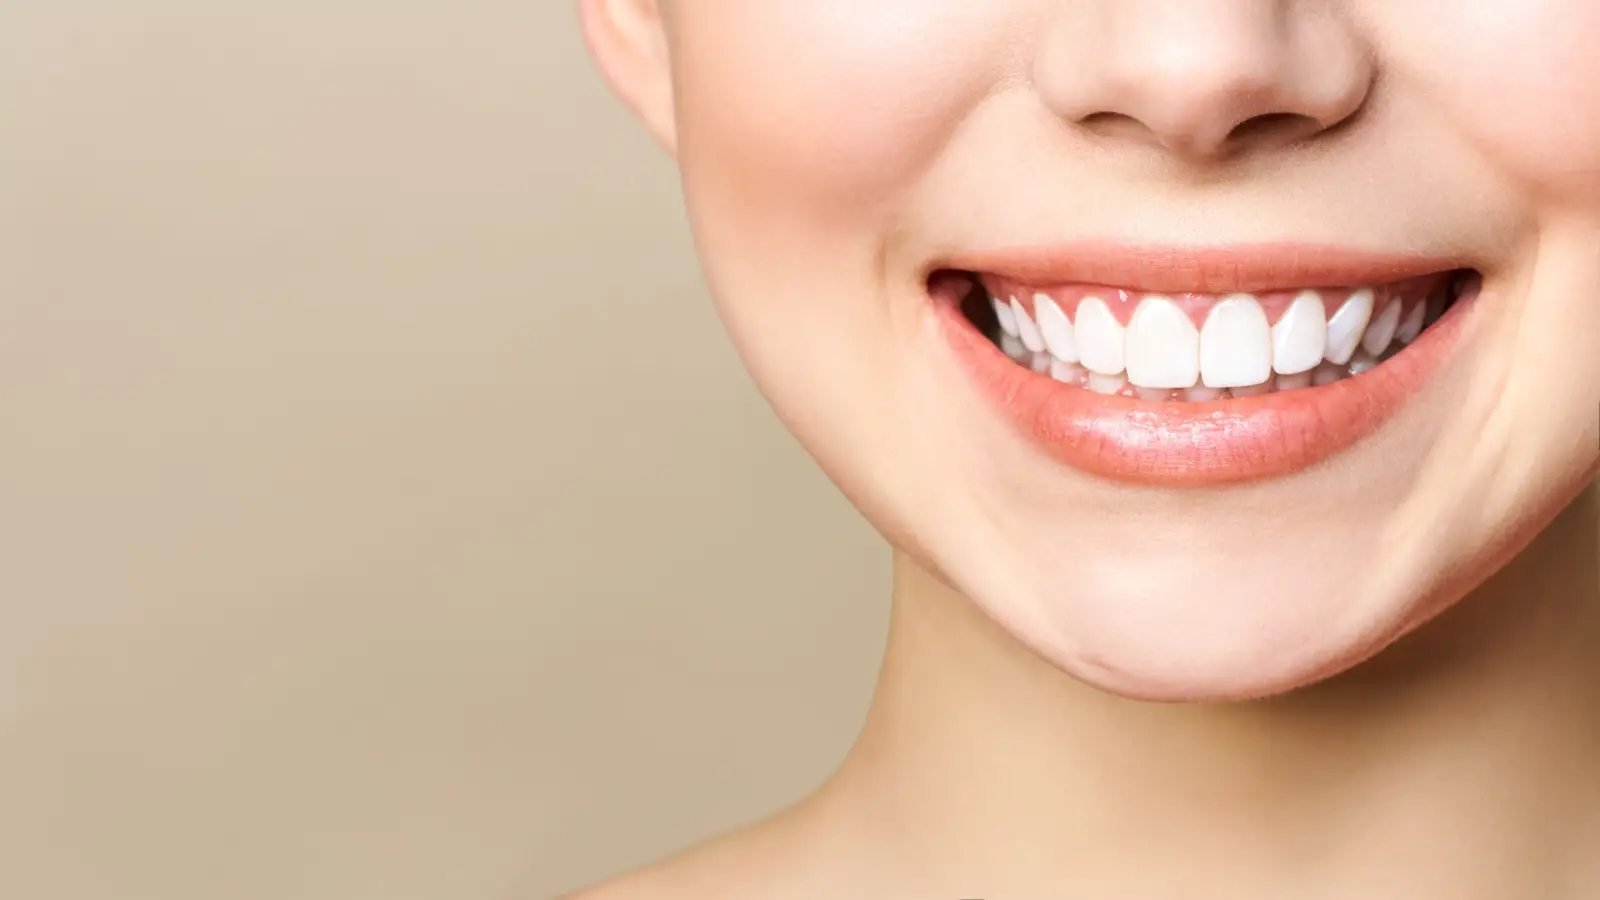 هناك الكثير من الطرق الطبية التي تُستخدم لتجميل الاسنان ويعتمد اختيار أي منها بناء على التشخيص الطبي للحالة. تعرفي إلى المزيد من خلال المقال